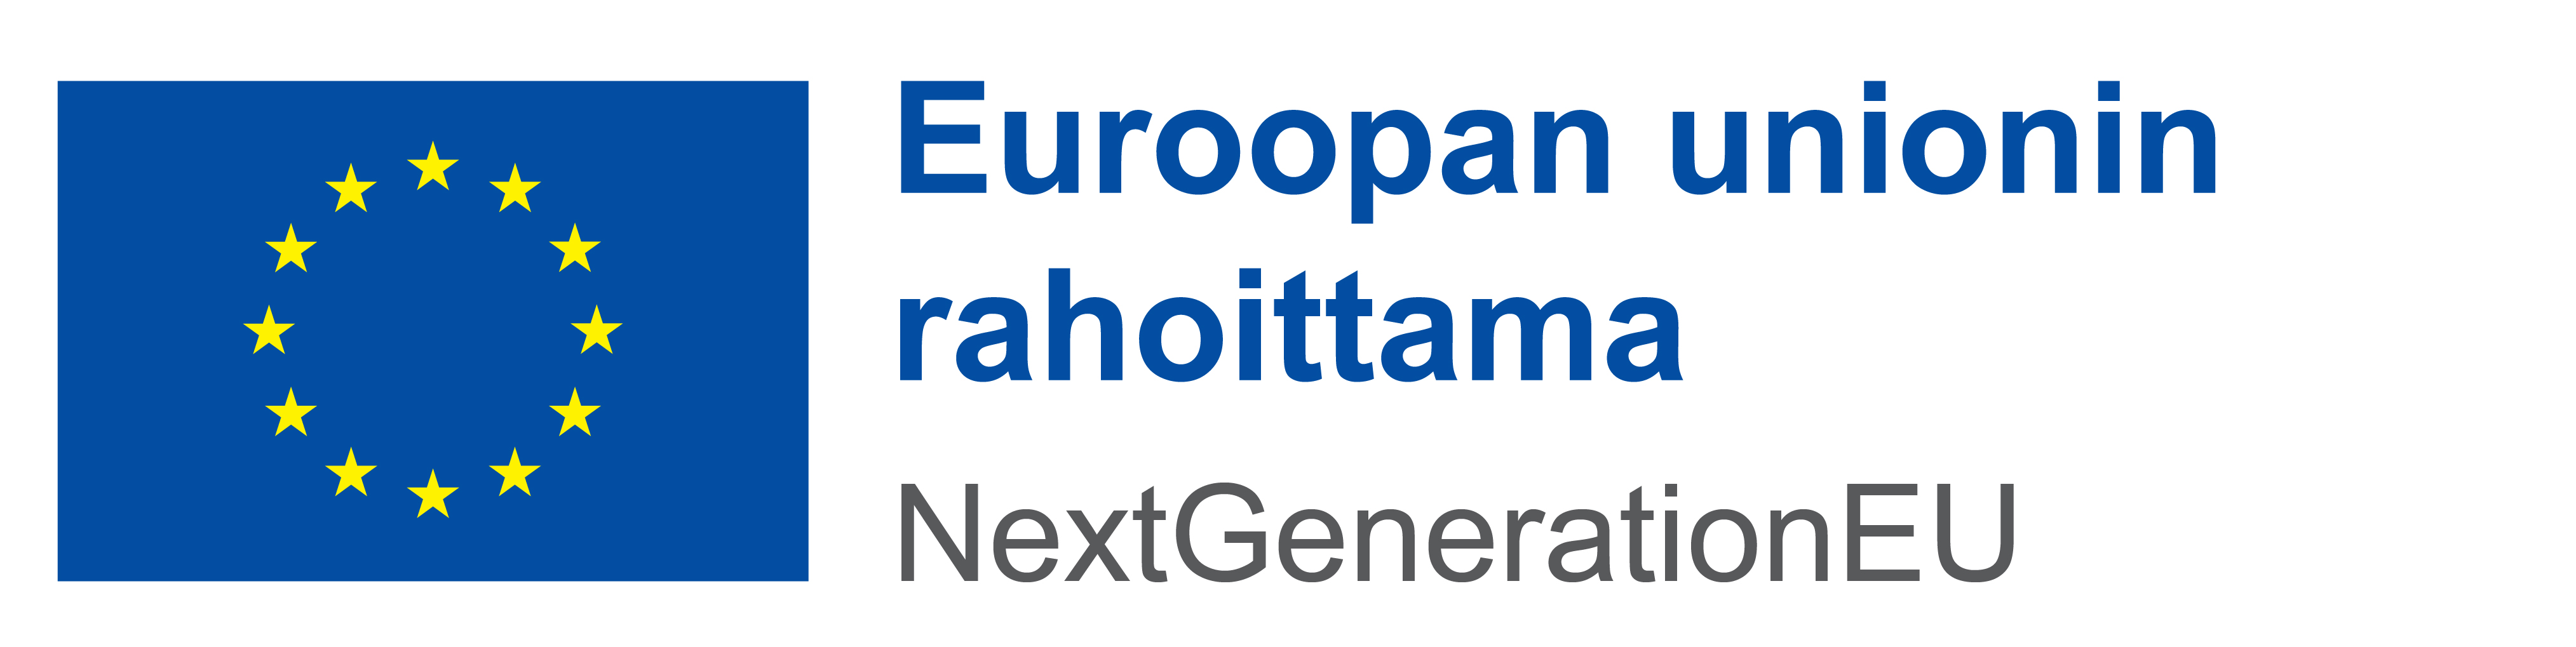 Europaan unonin lippu ja teksti Euroopan unionin rahoittama NextGenerationEU